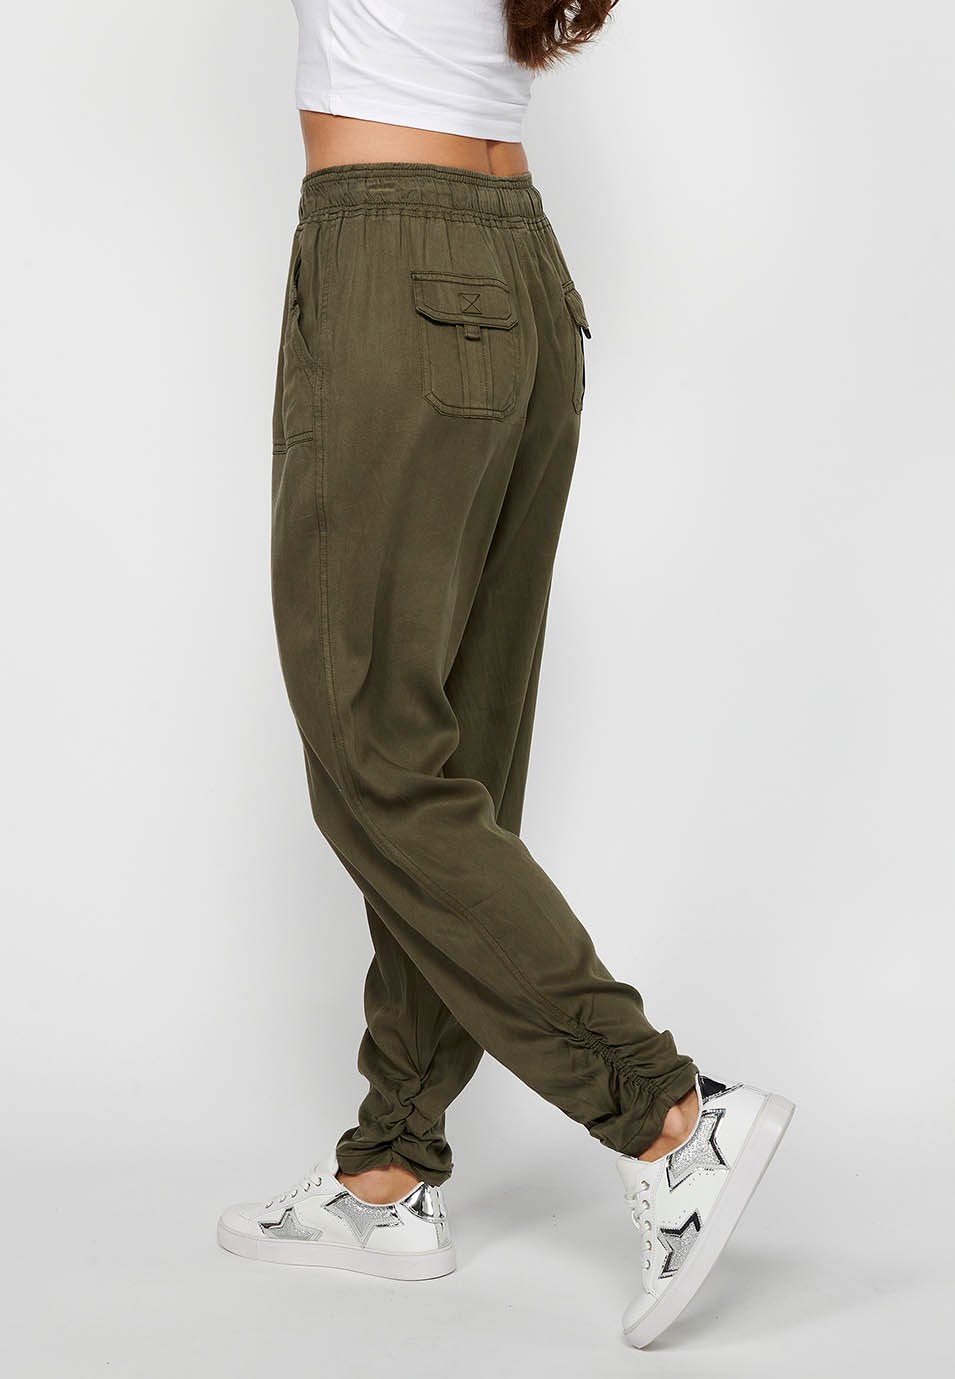 Lange Jogginghose mit gewelltem Finish und gummiertem Bund mit vier Taschen, zwei Gesäßtaschen mit Klappe in der Farbe Khaki für Damen 6